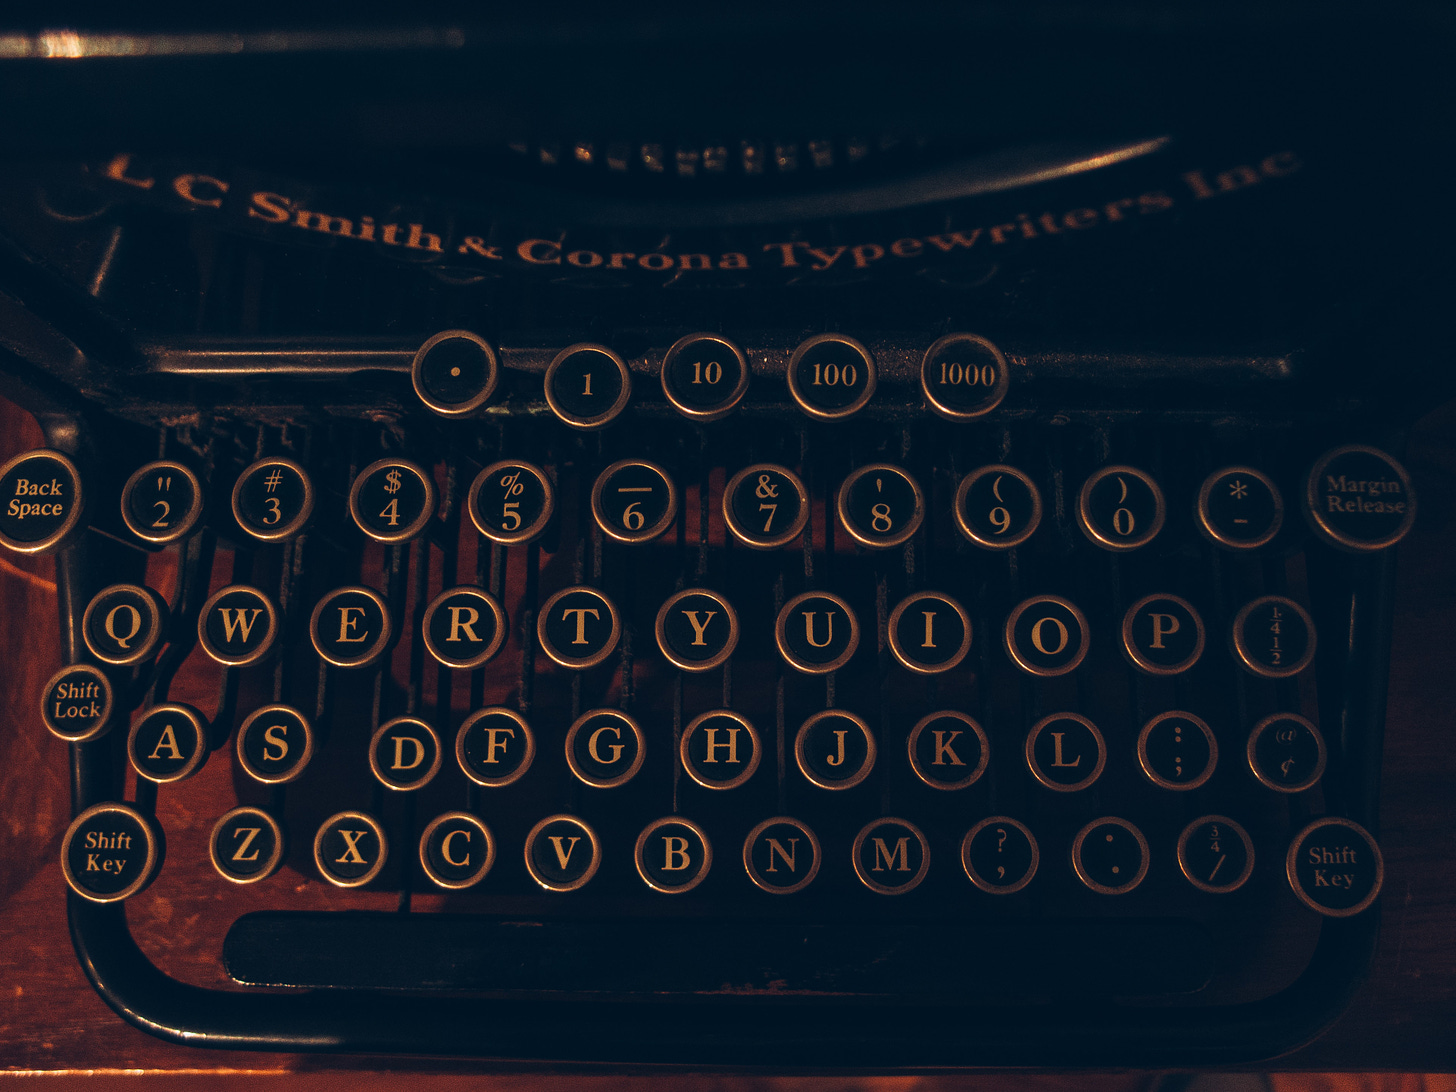 a dimly lit dramtic photo of an old typewriter keyboard